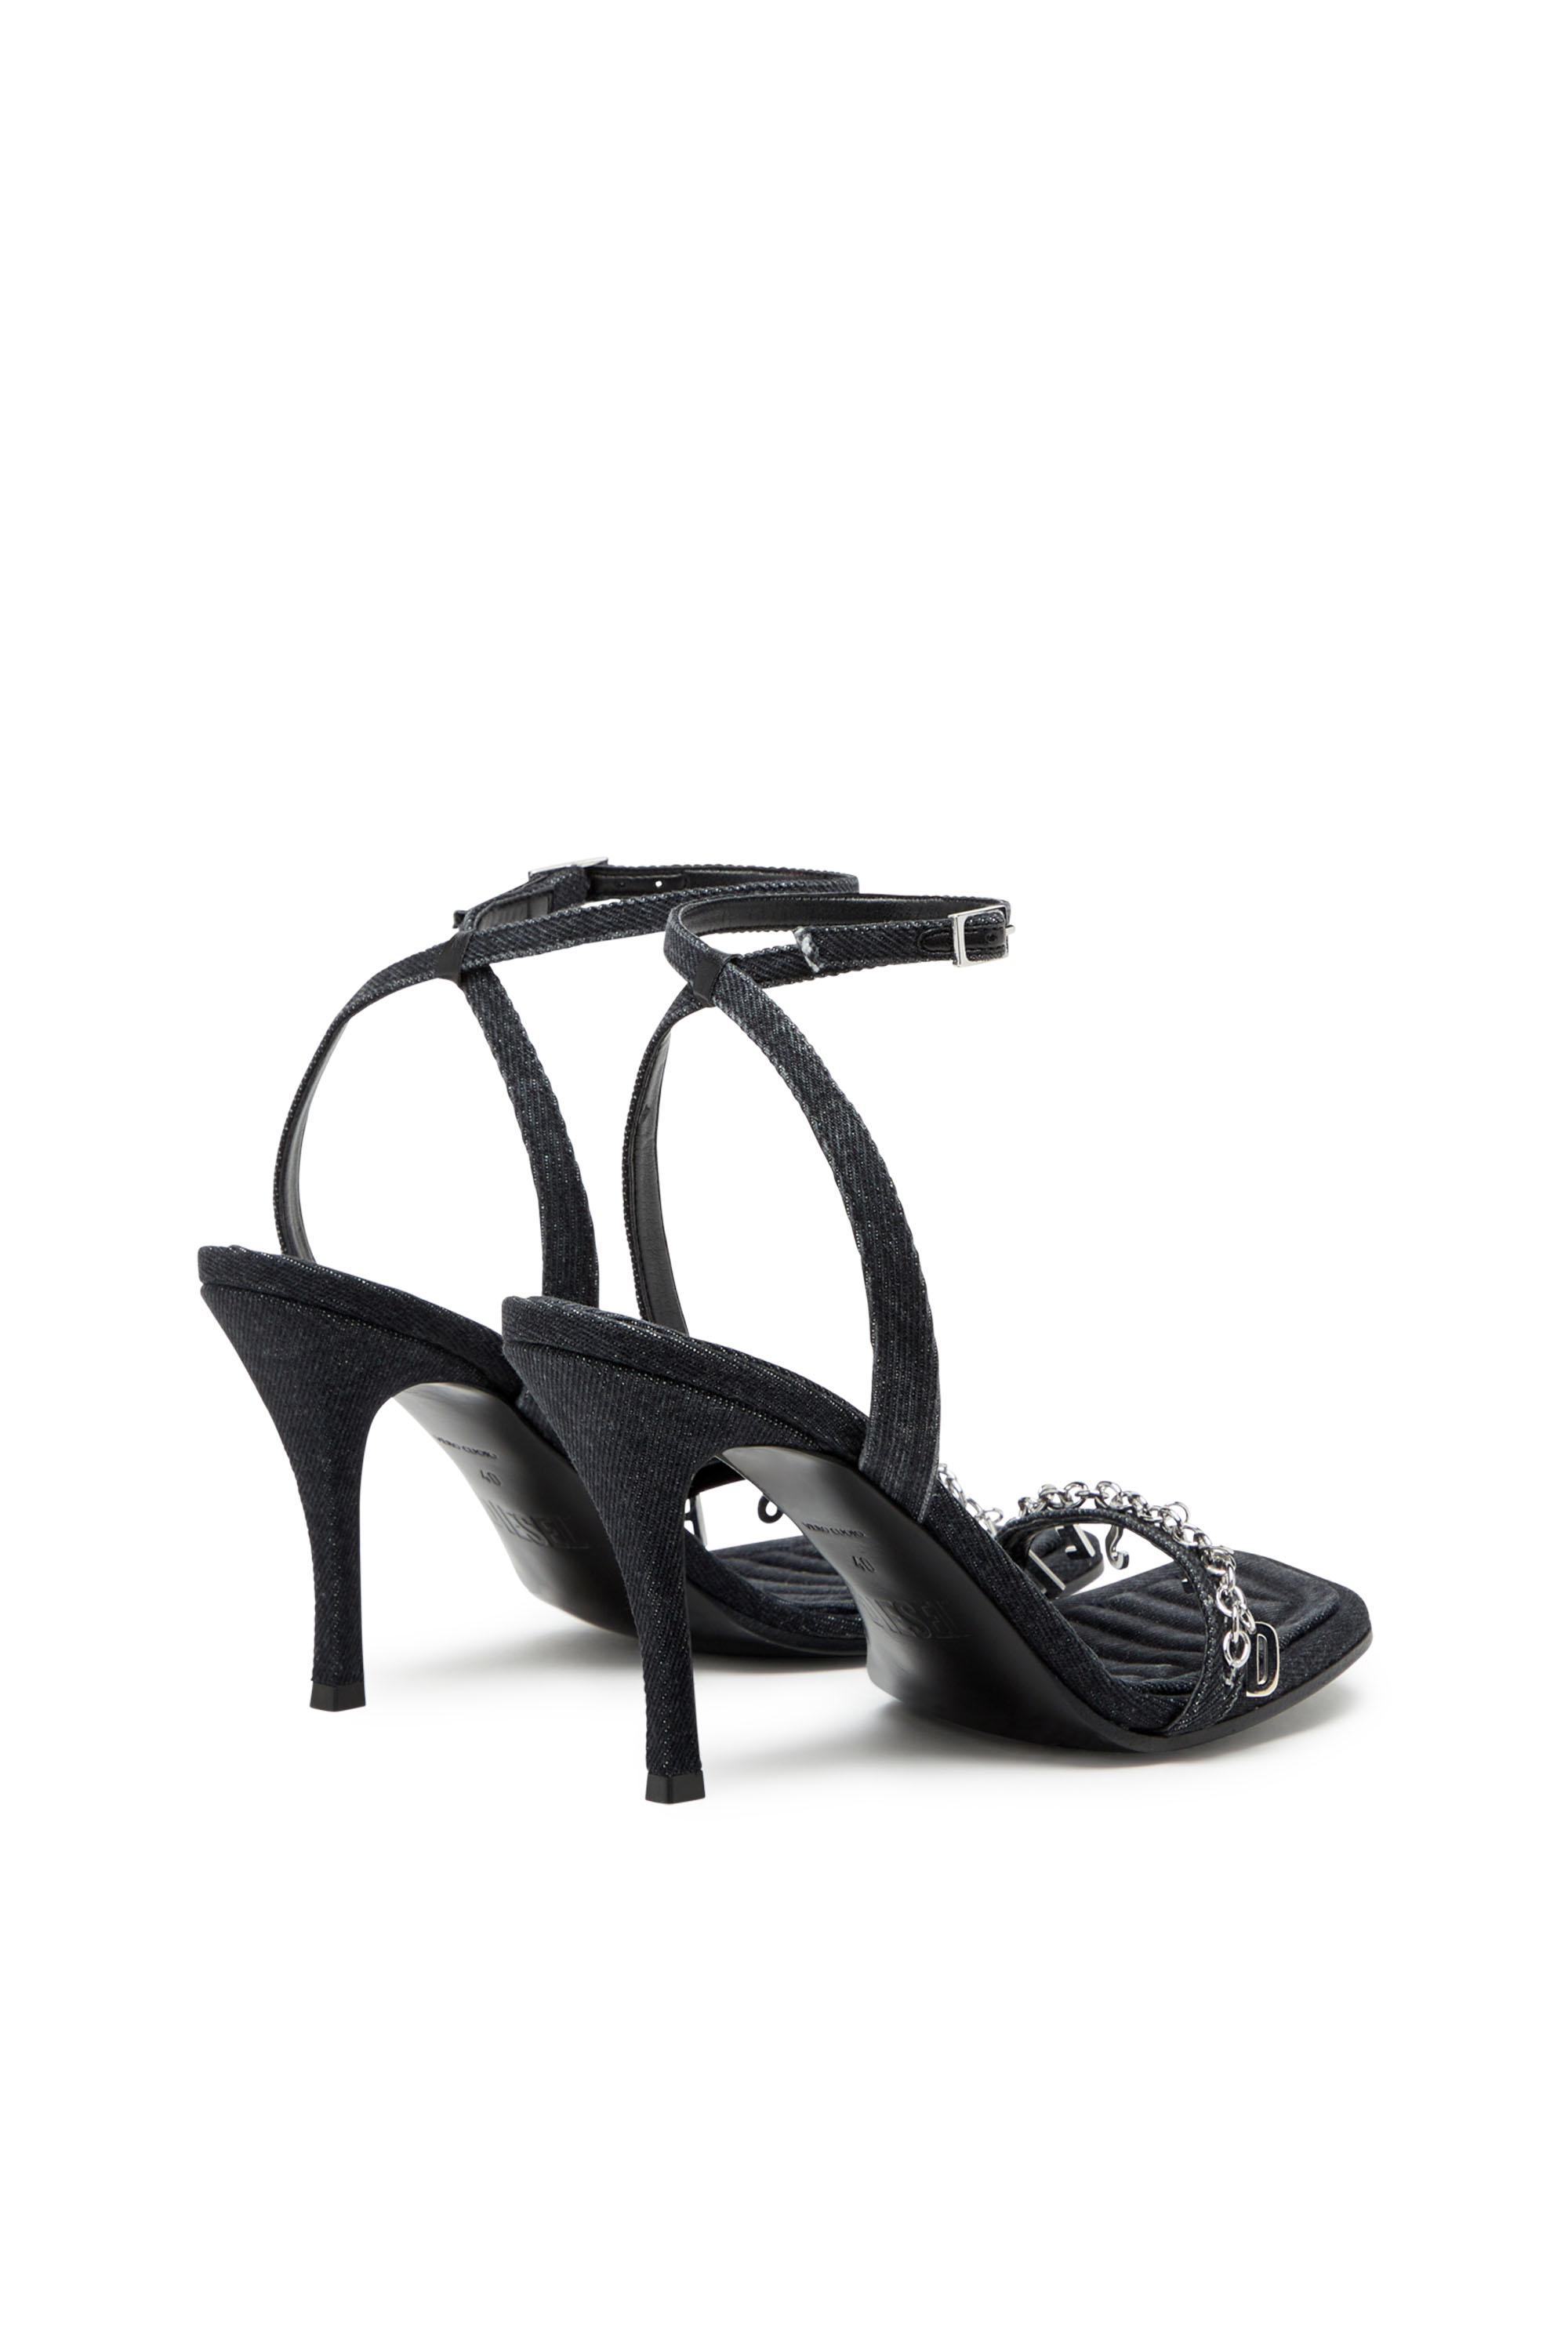 Diesel - D-VINA SDL, Woman D-Vina Sdl Sandals - Denim sandals with Diesel charms in Black - Image 4